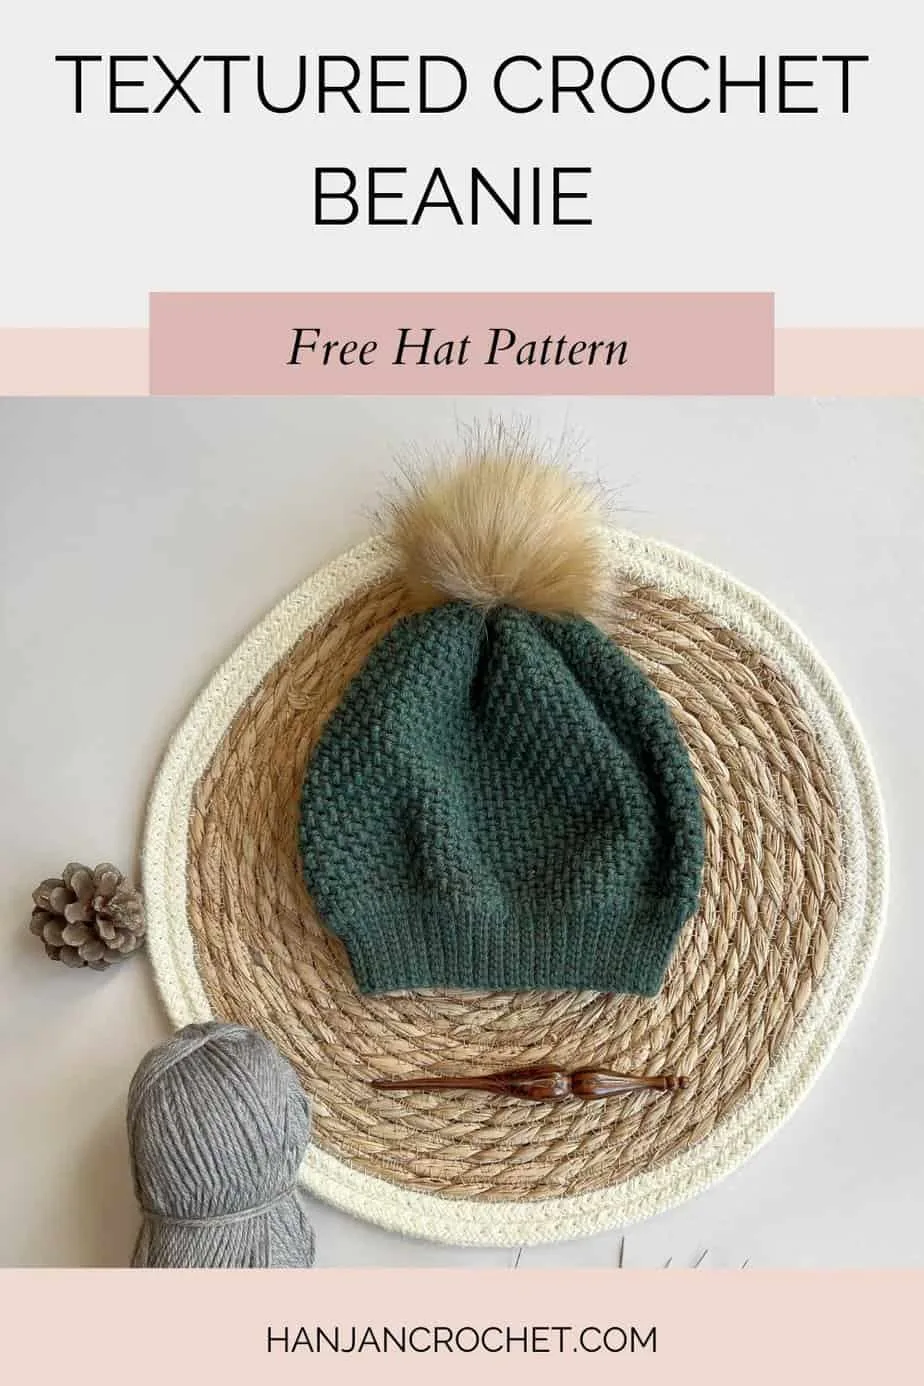 Green crochet crochet hat pattern with faux fur pom pom.